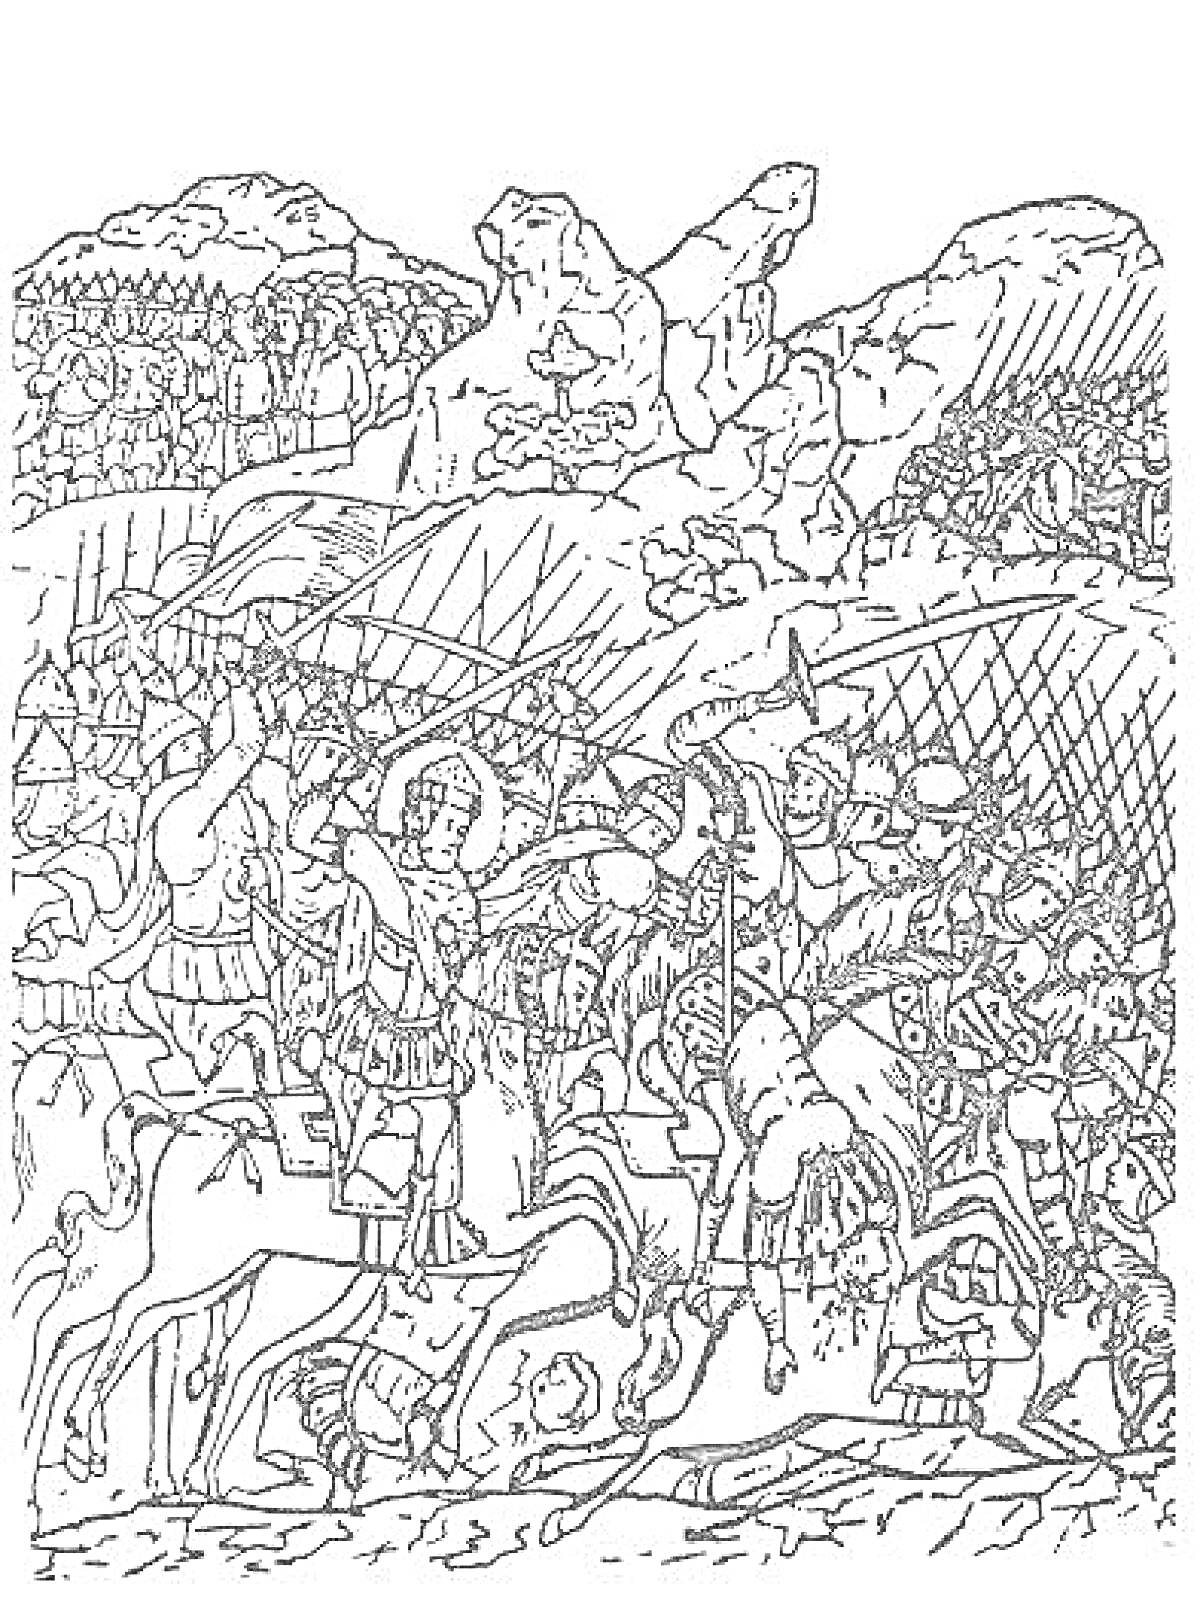 РаскраскаКуликовская битва: сражение всадников и пеших воинов среди холмов и лесов